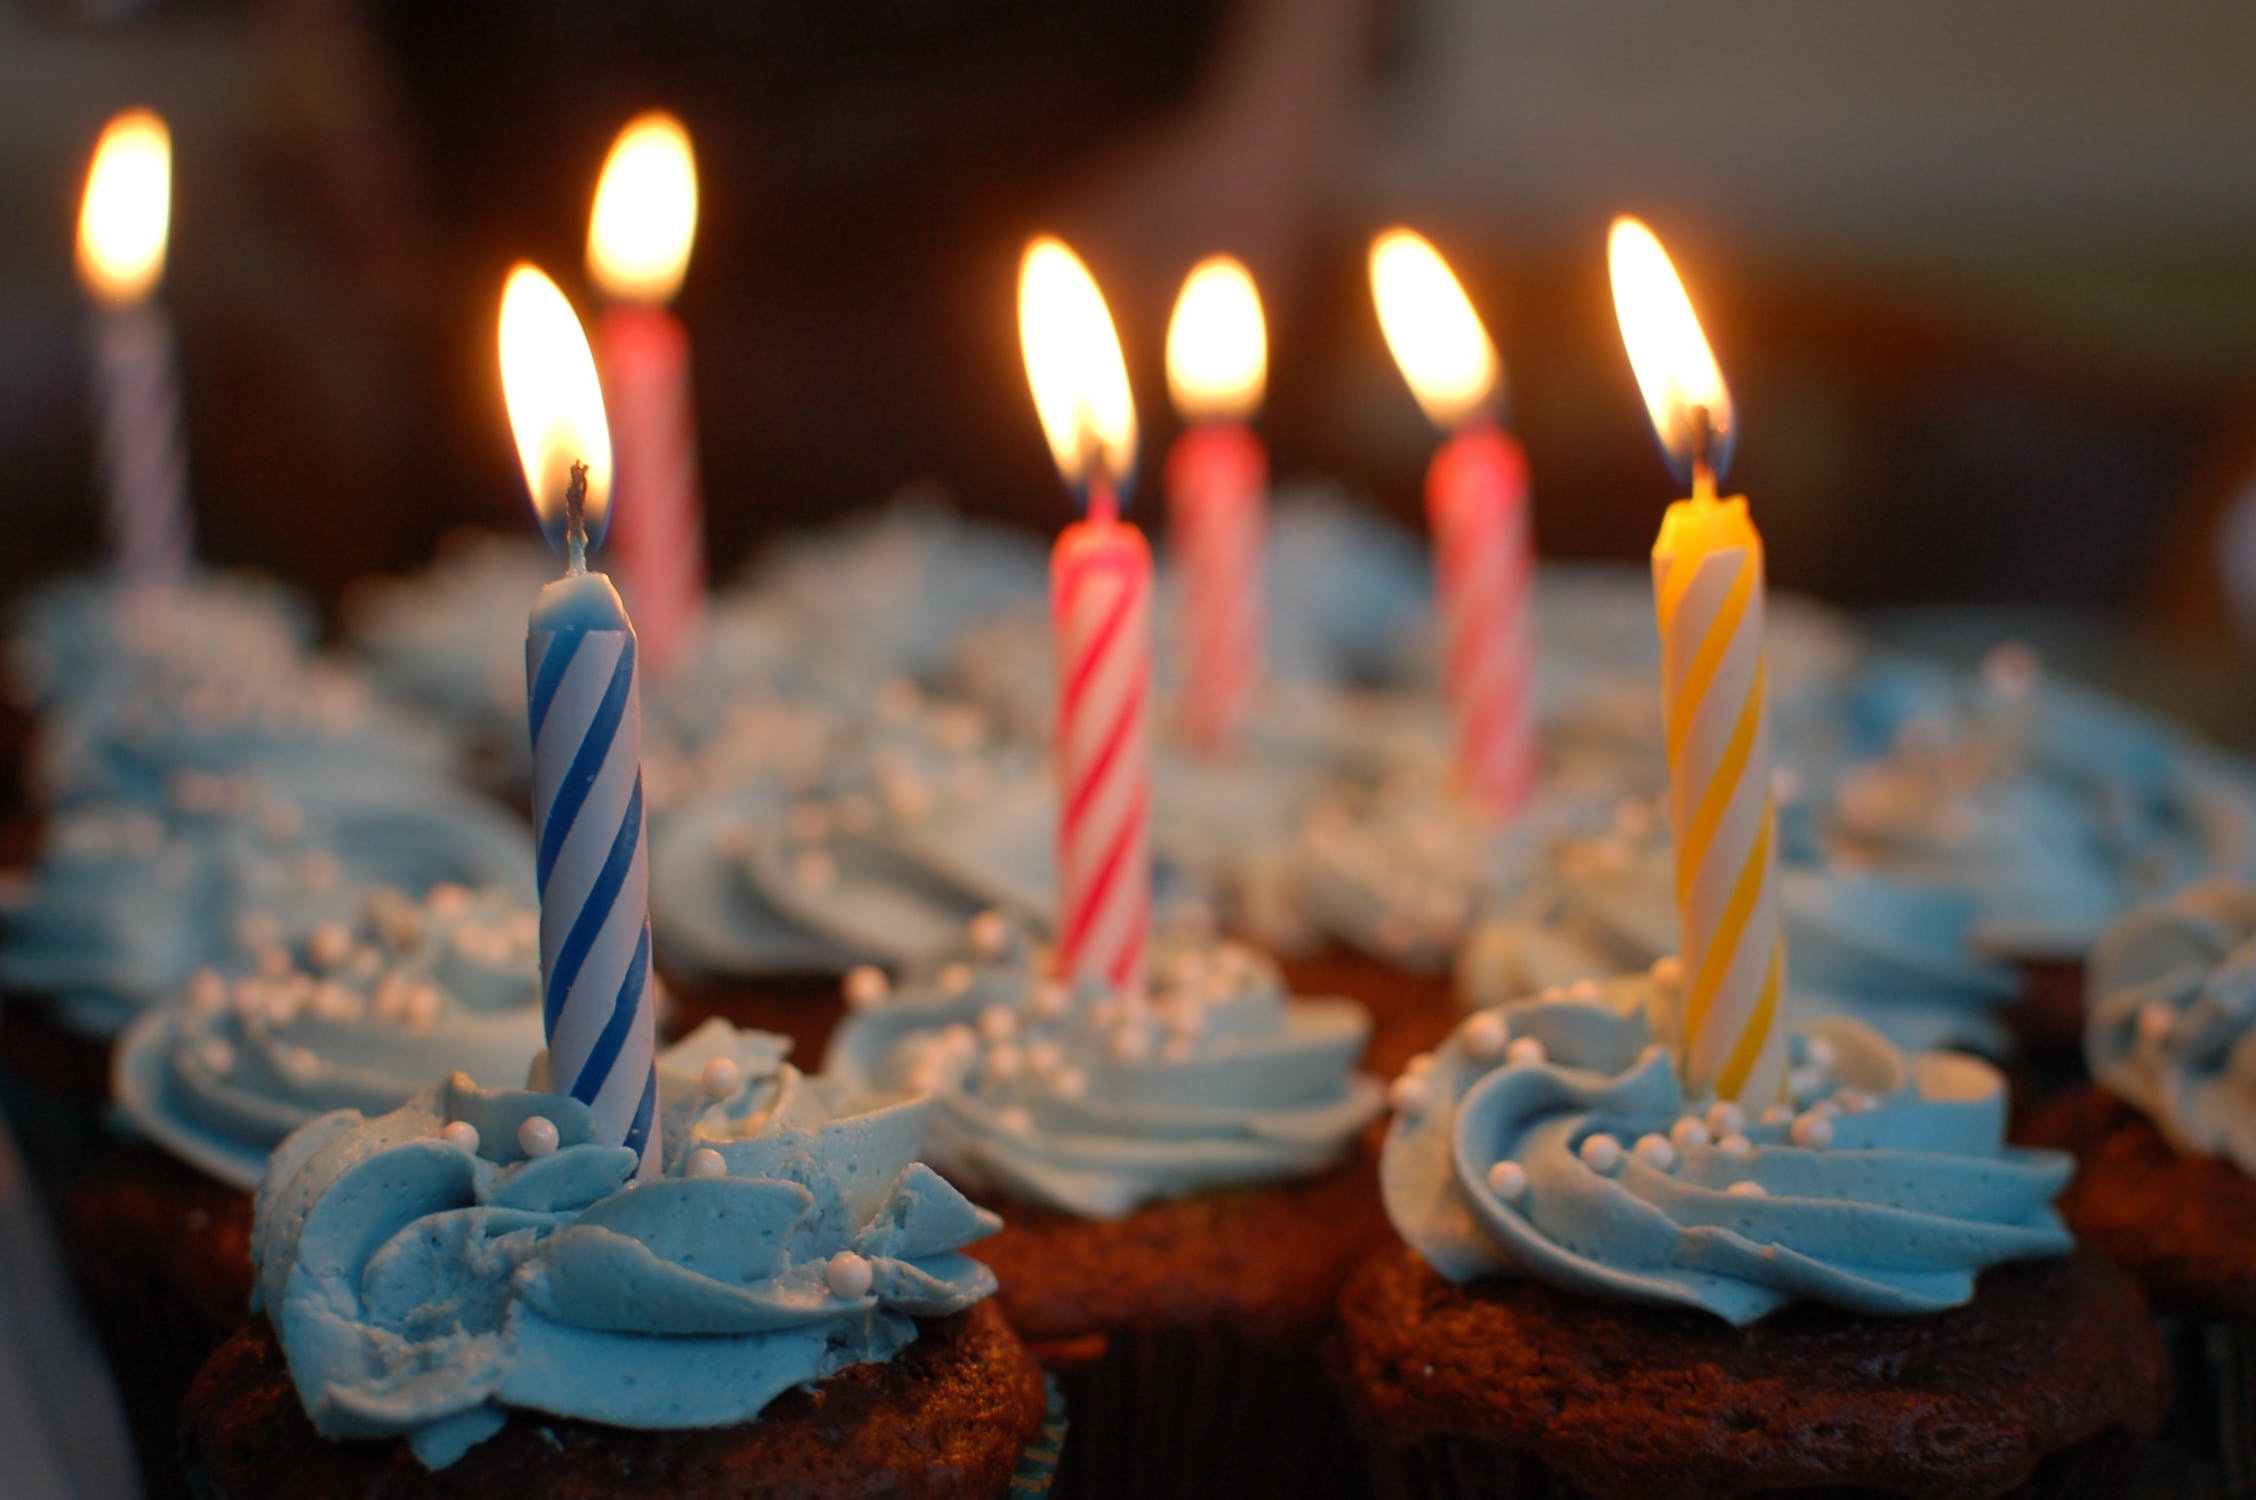 birthday-cake-cake-birthday-cupcakes-40183